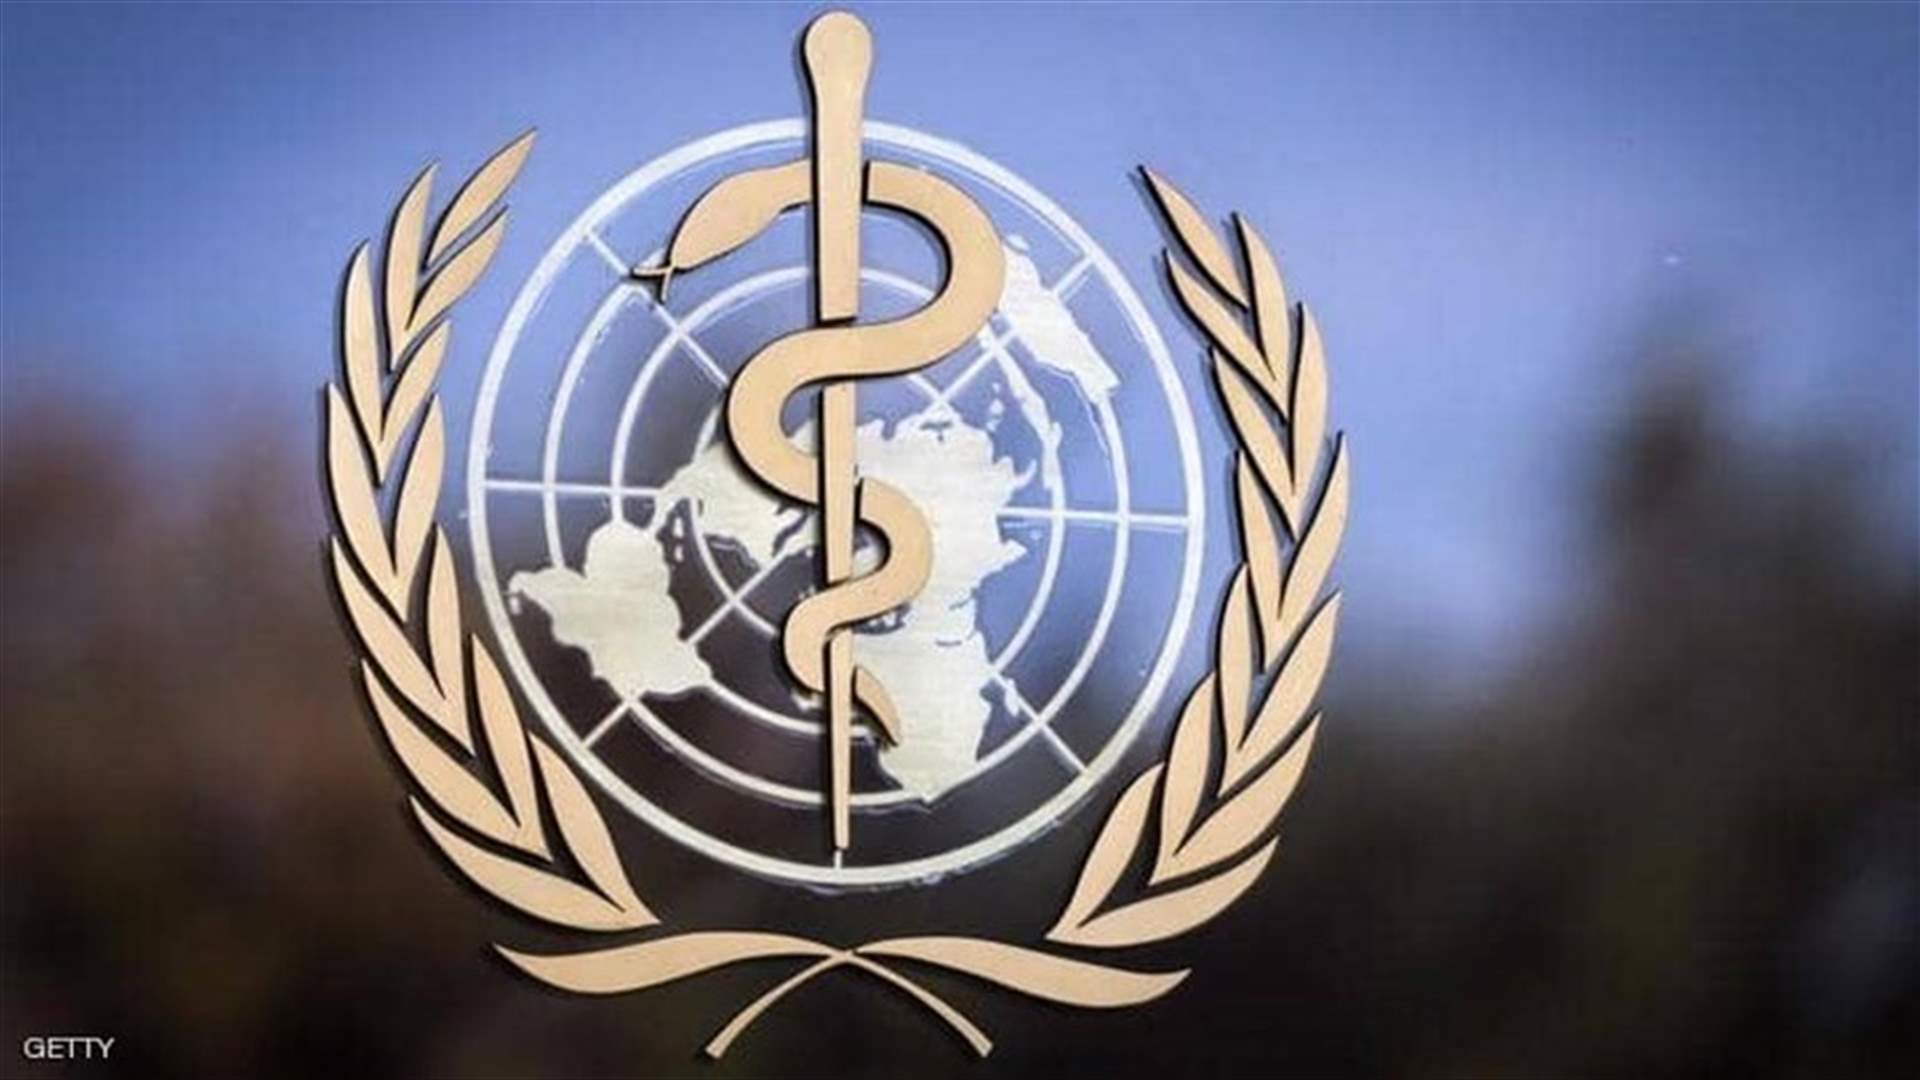 منظمة الصحة العالمية: لا وفيات مرتبطة بأوميكرون حتى الآن